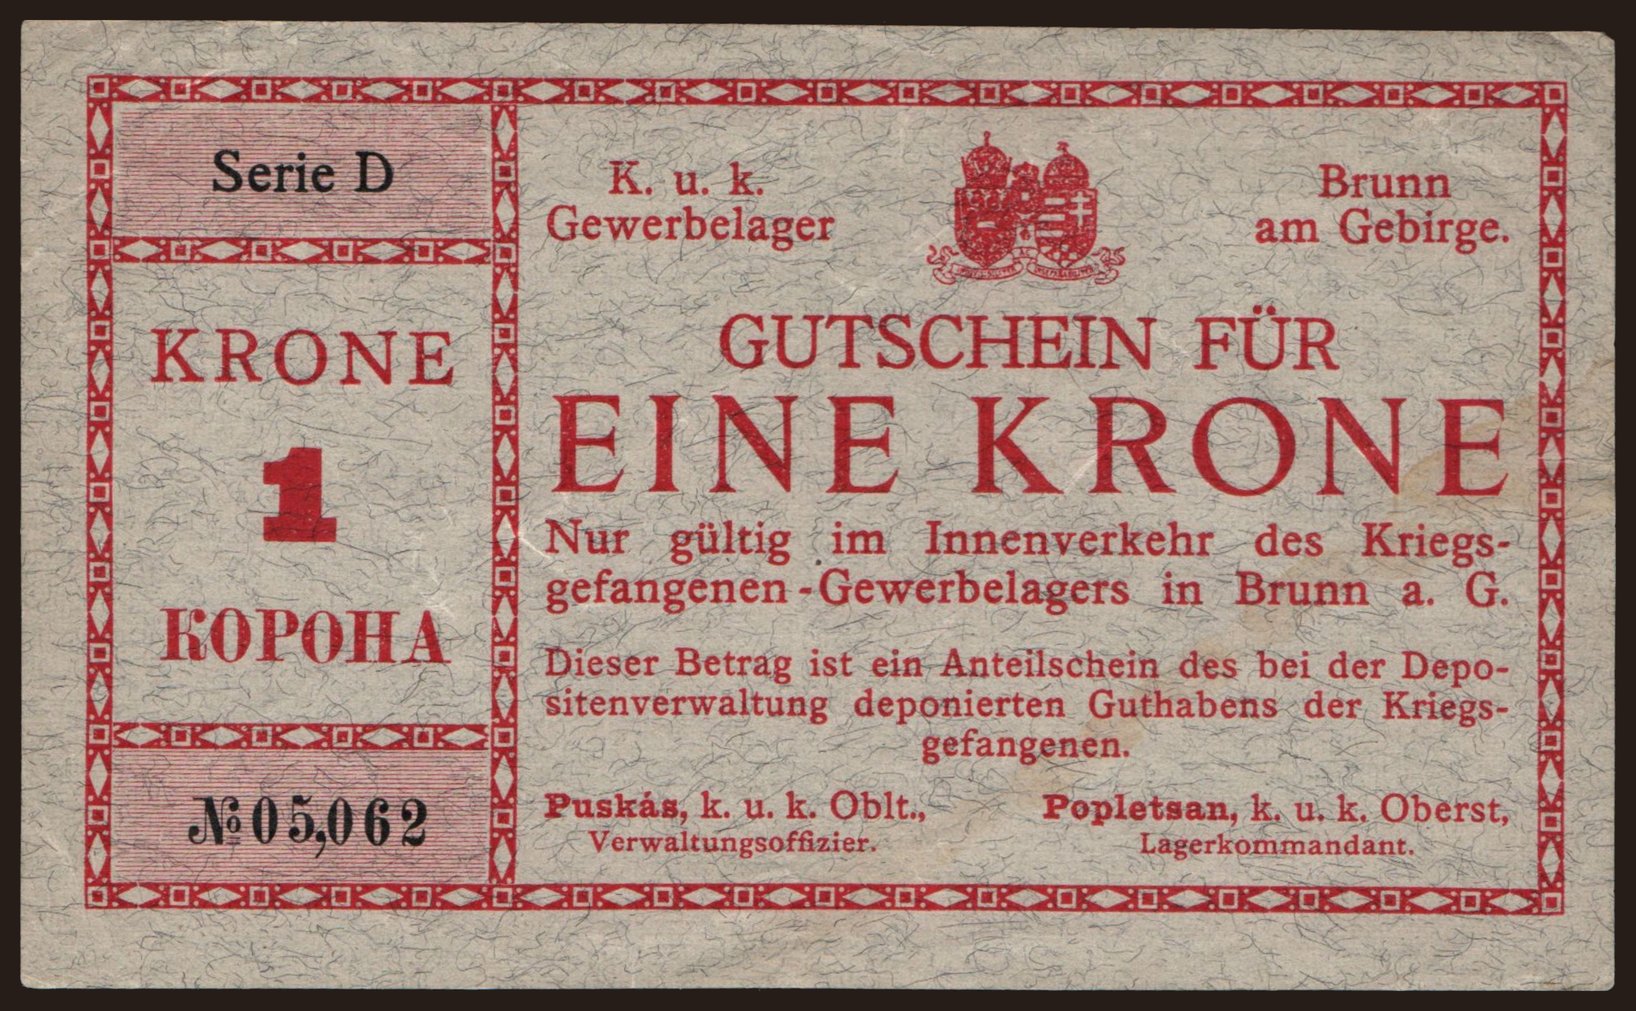 Brunn am Gebirge, 1 Krone, 1916